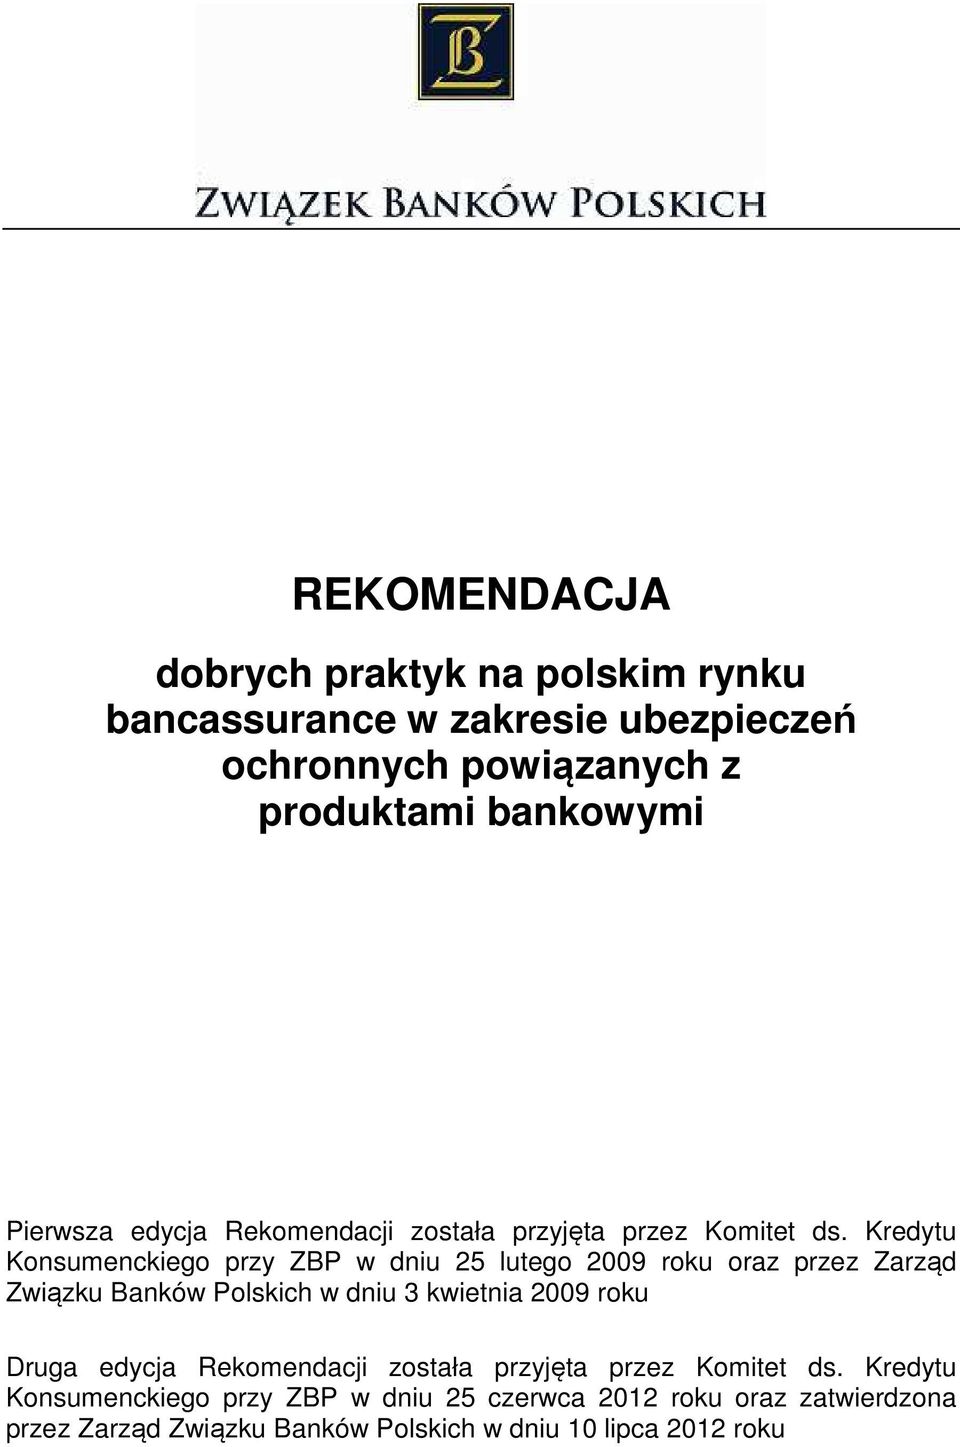 Kredytu Konsumenckiego przy ZBP w dniu 25 lutego 2009 roku oraz przez Zarząd Związku Banków Polskich w dniu 3 kwietnia 2009 roku